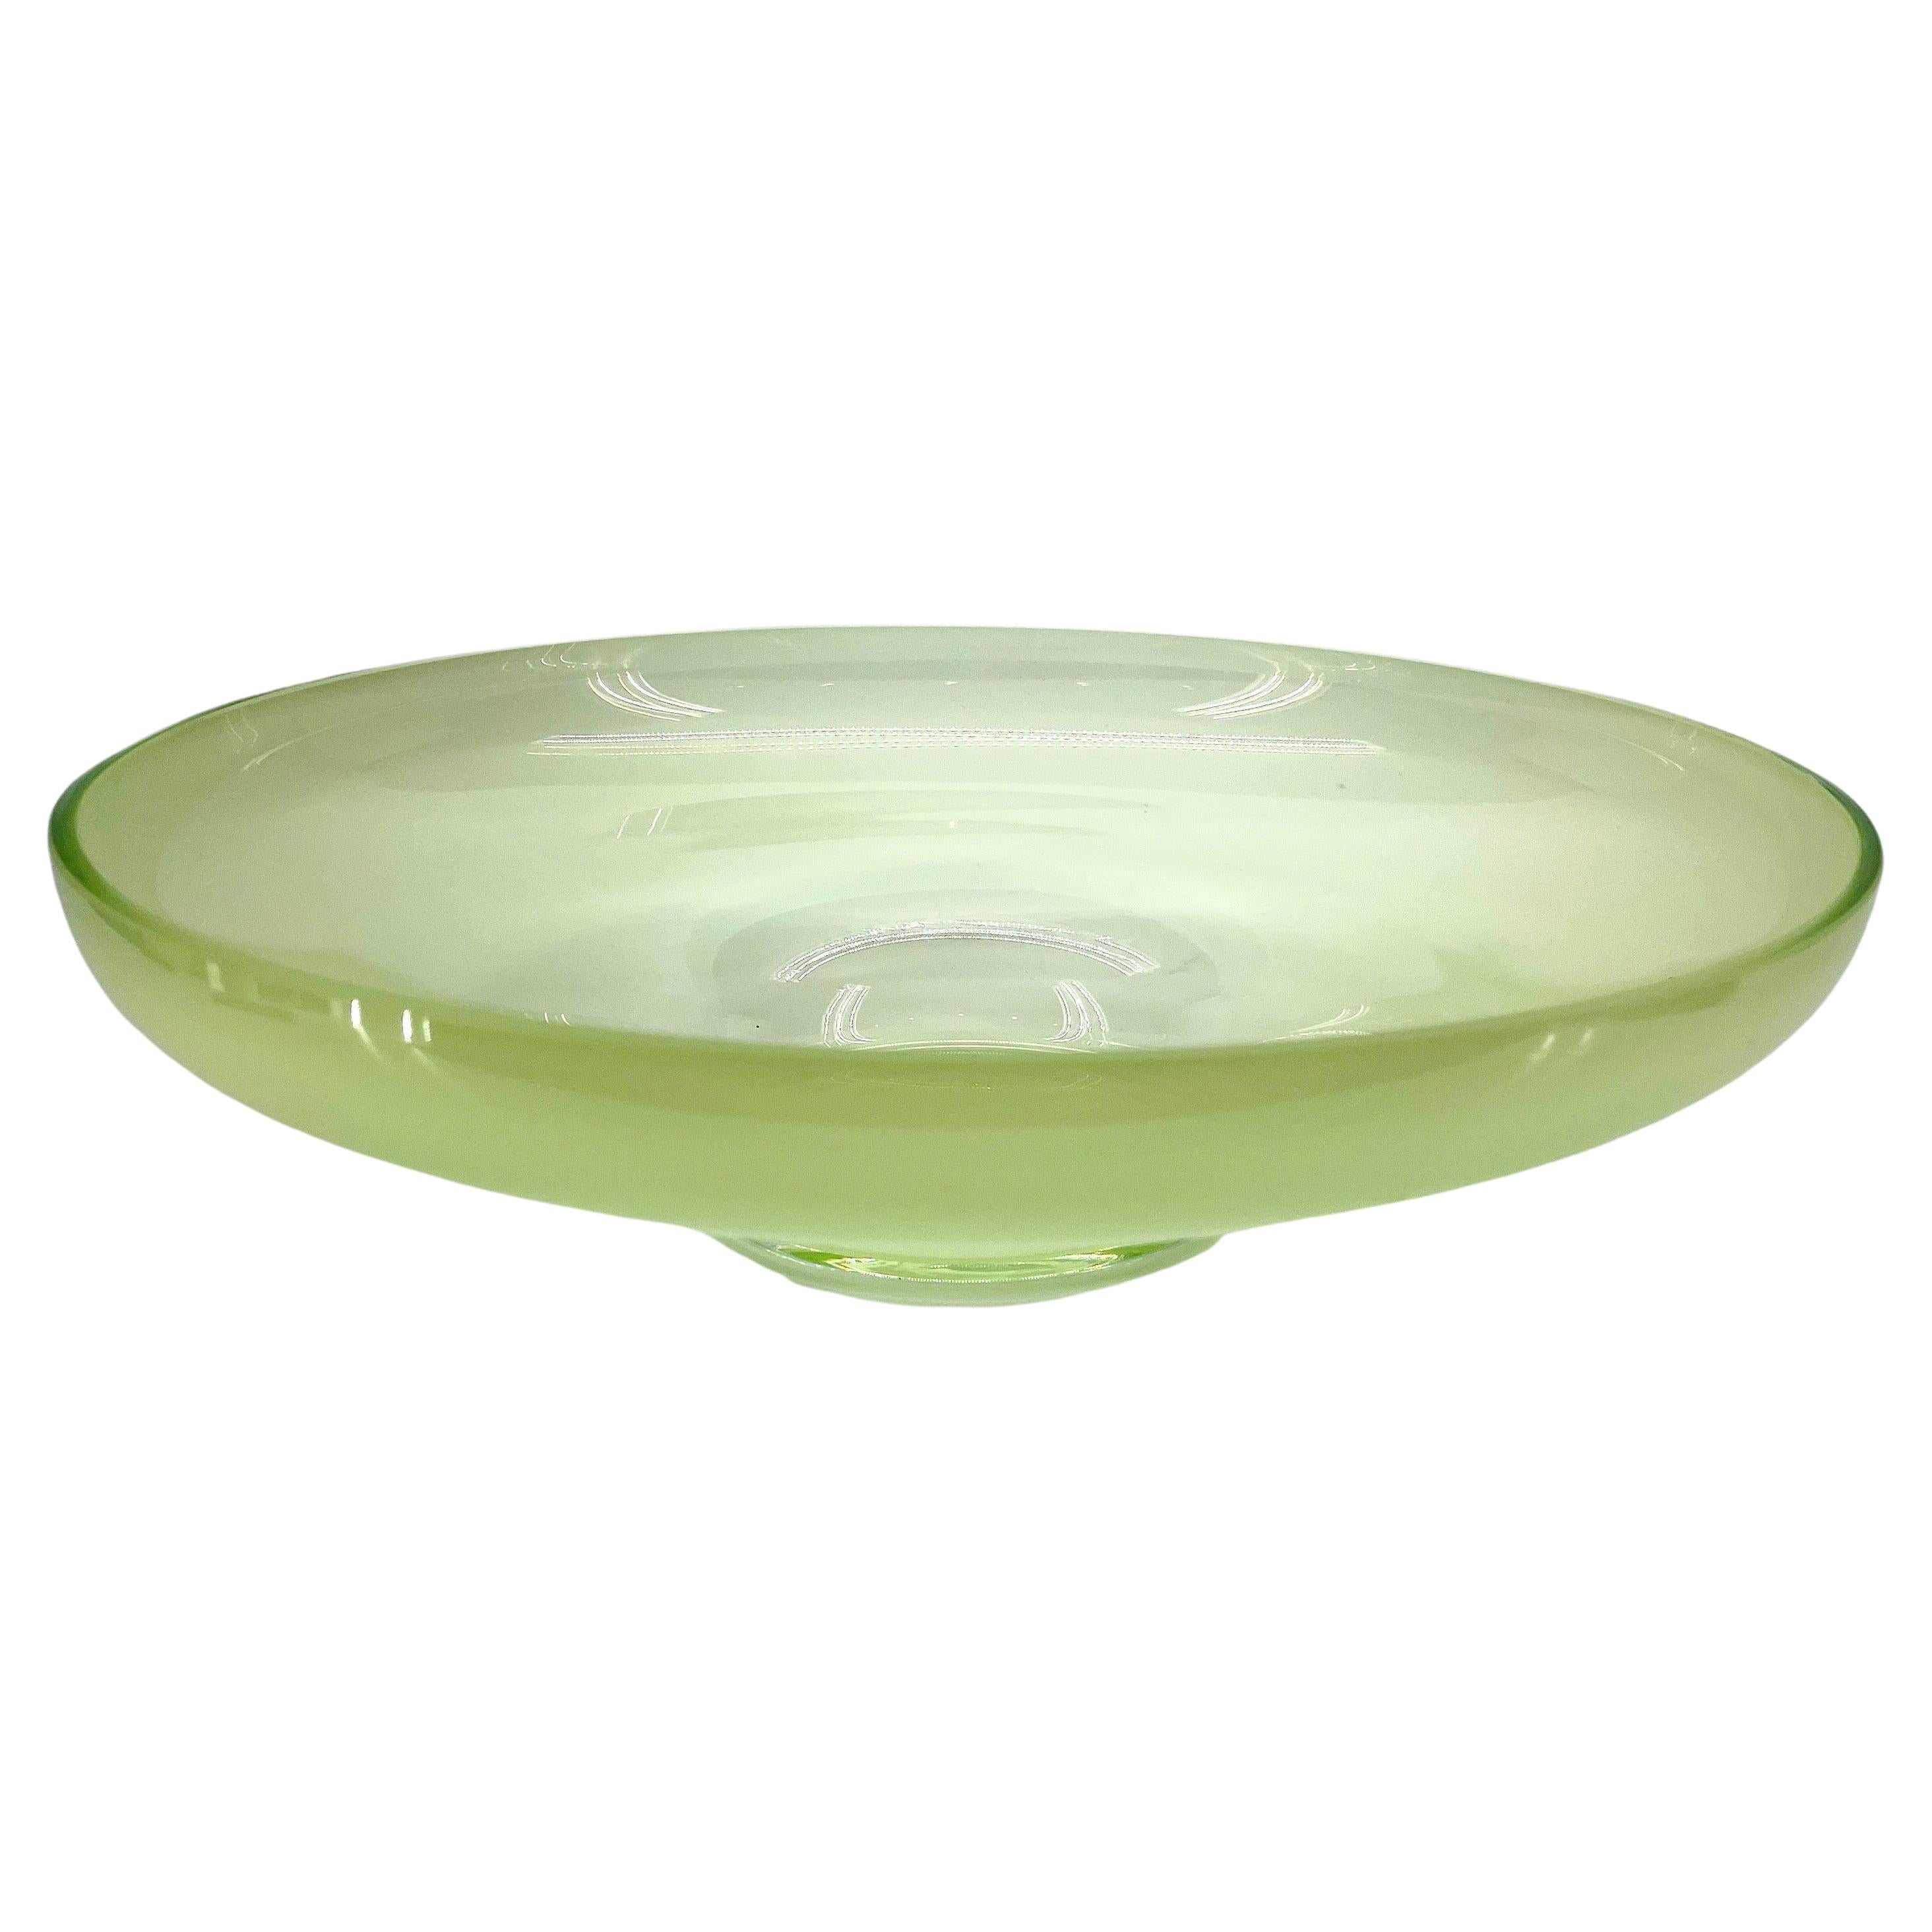 Coupe de centre de table en verre Murano opalin vert 

Ce bol très robuste est à la fois décoratif et fonctionnel. L'usure de la base est imbattable. Ce bol vintage classique est une pièce d'apparat parfaite pour tout décor formel ou informel.